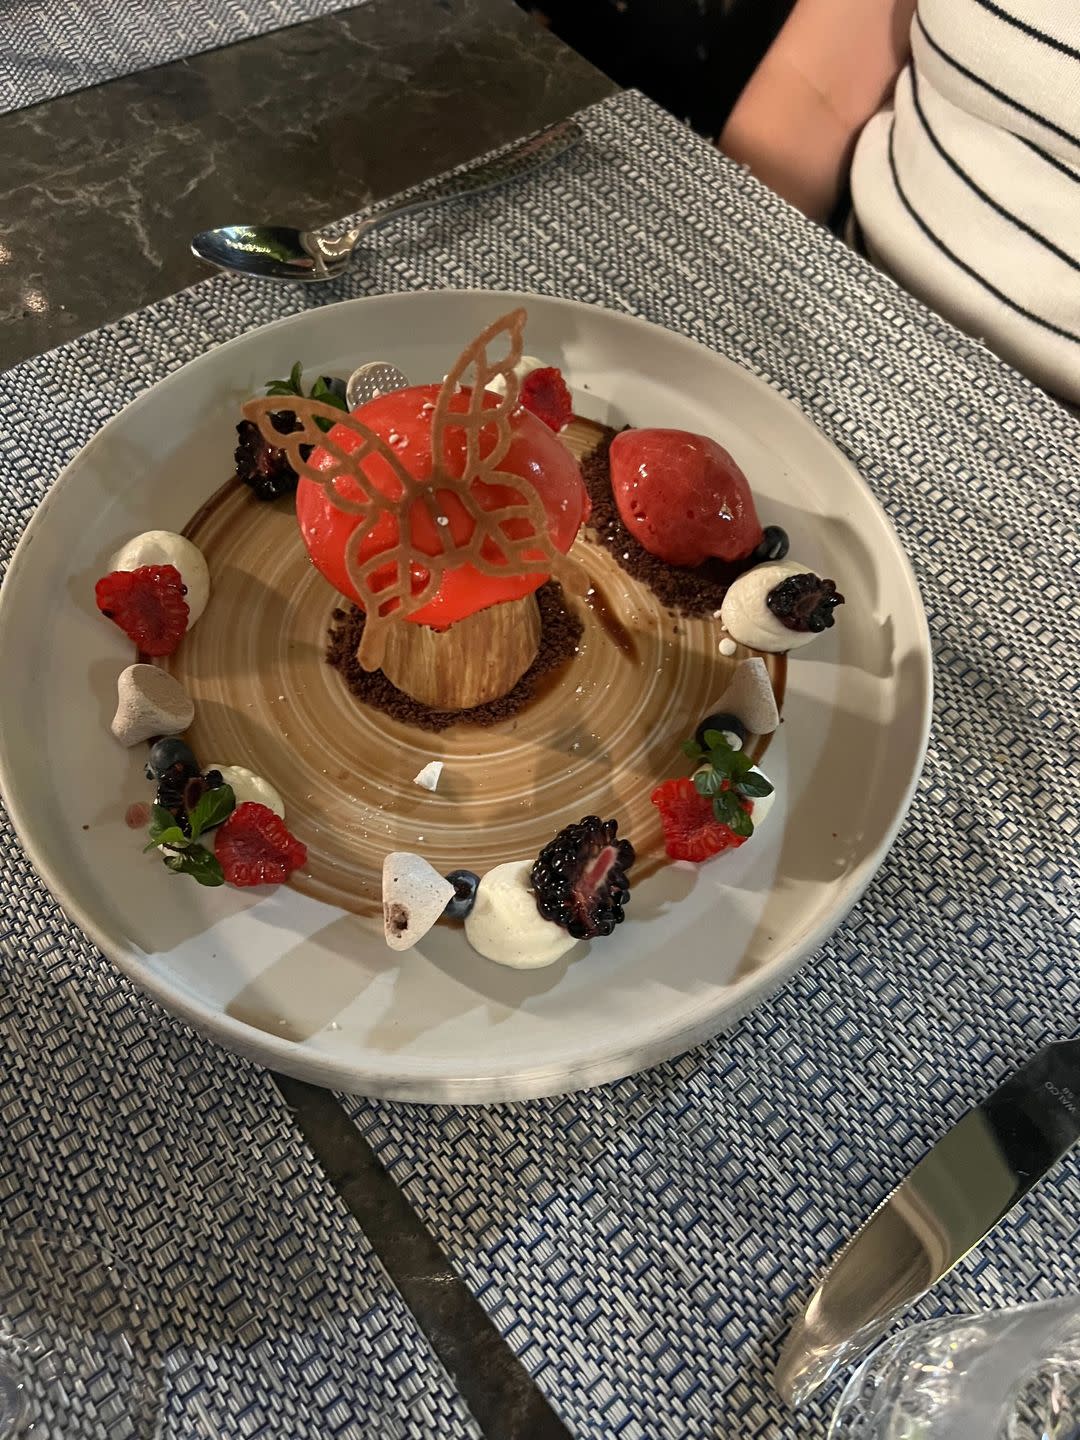 a plate of dessert